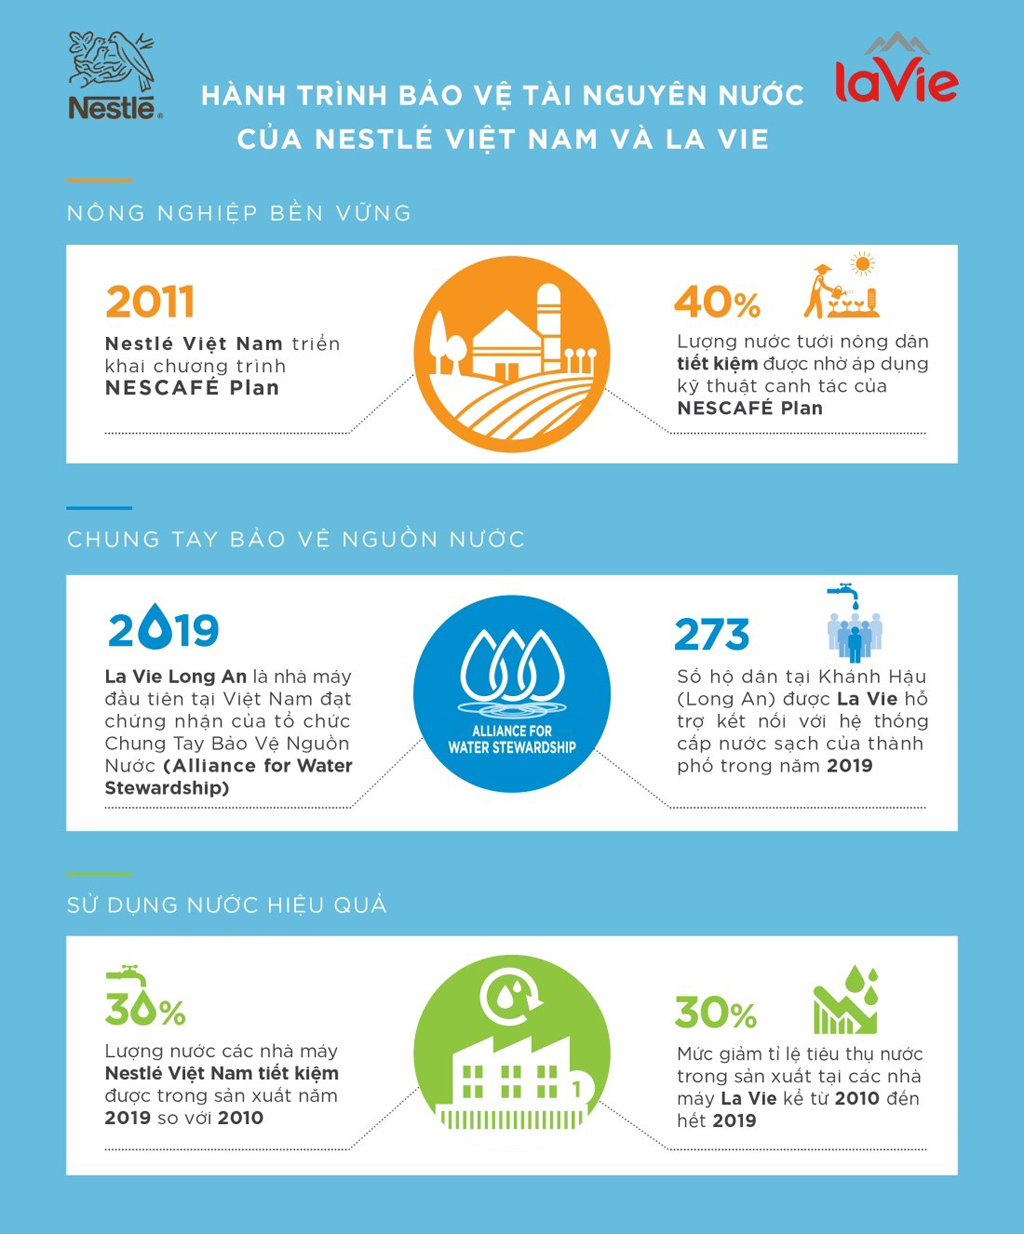 Hành trình bảo vệ tài nguyên nước của Nestlé Việt Nam và La Vie